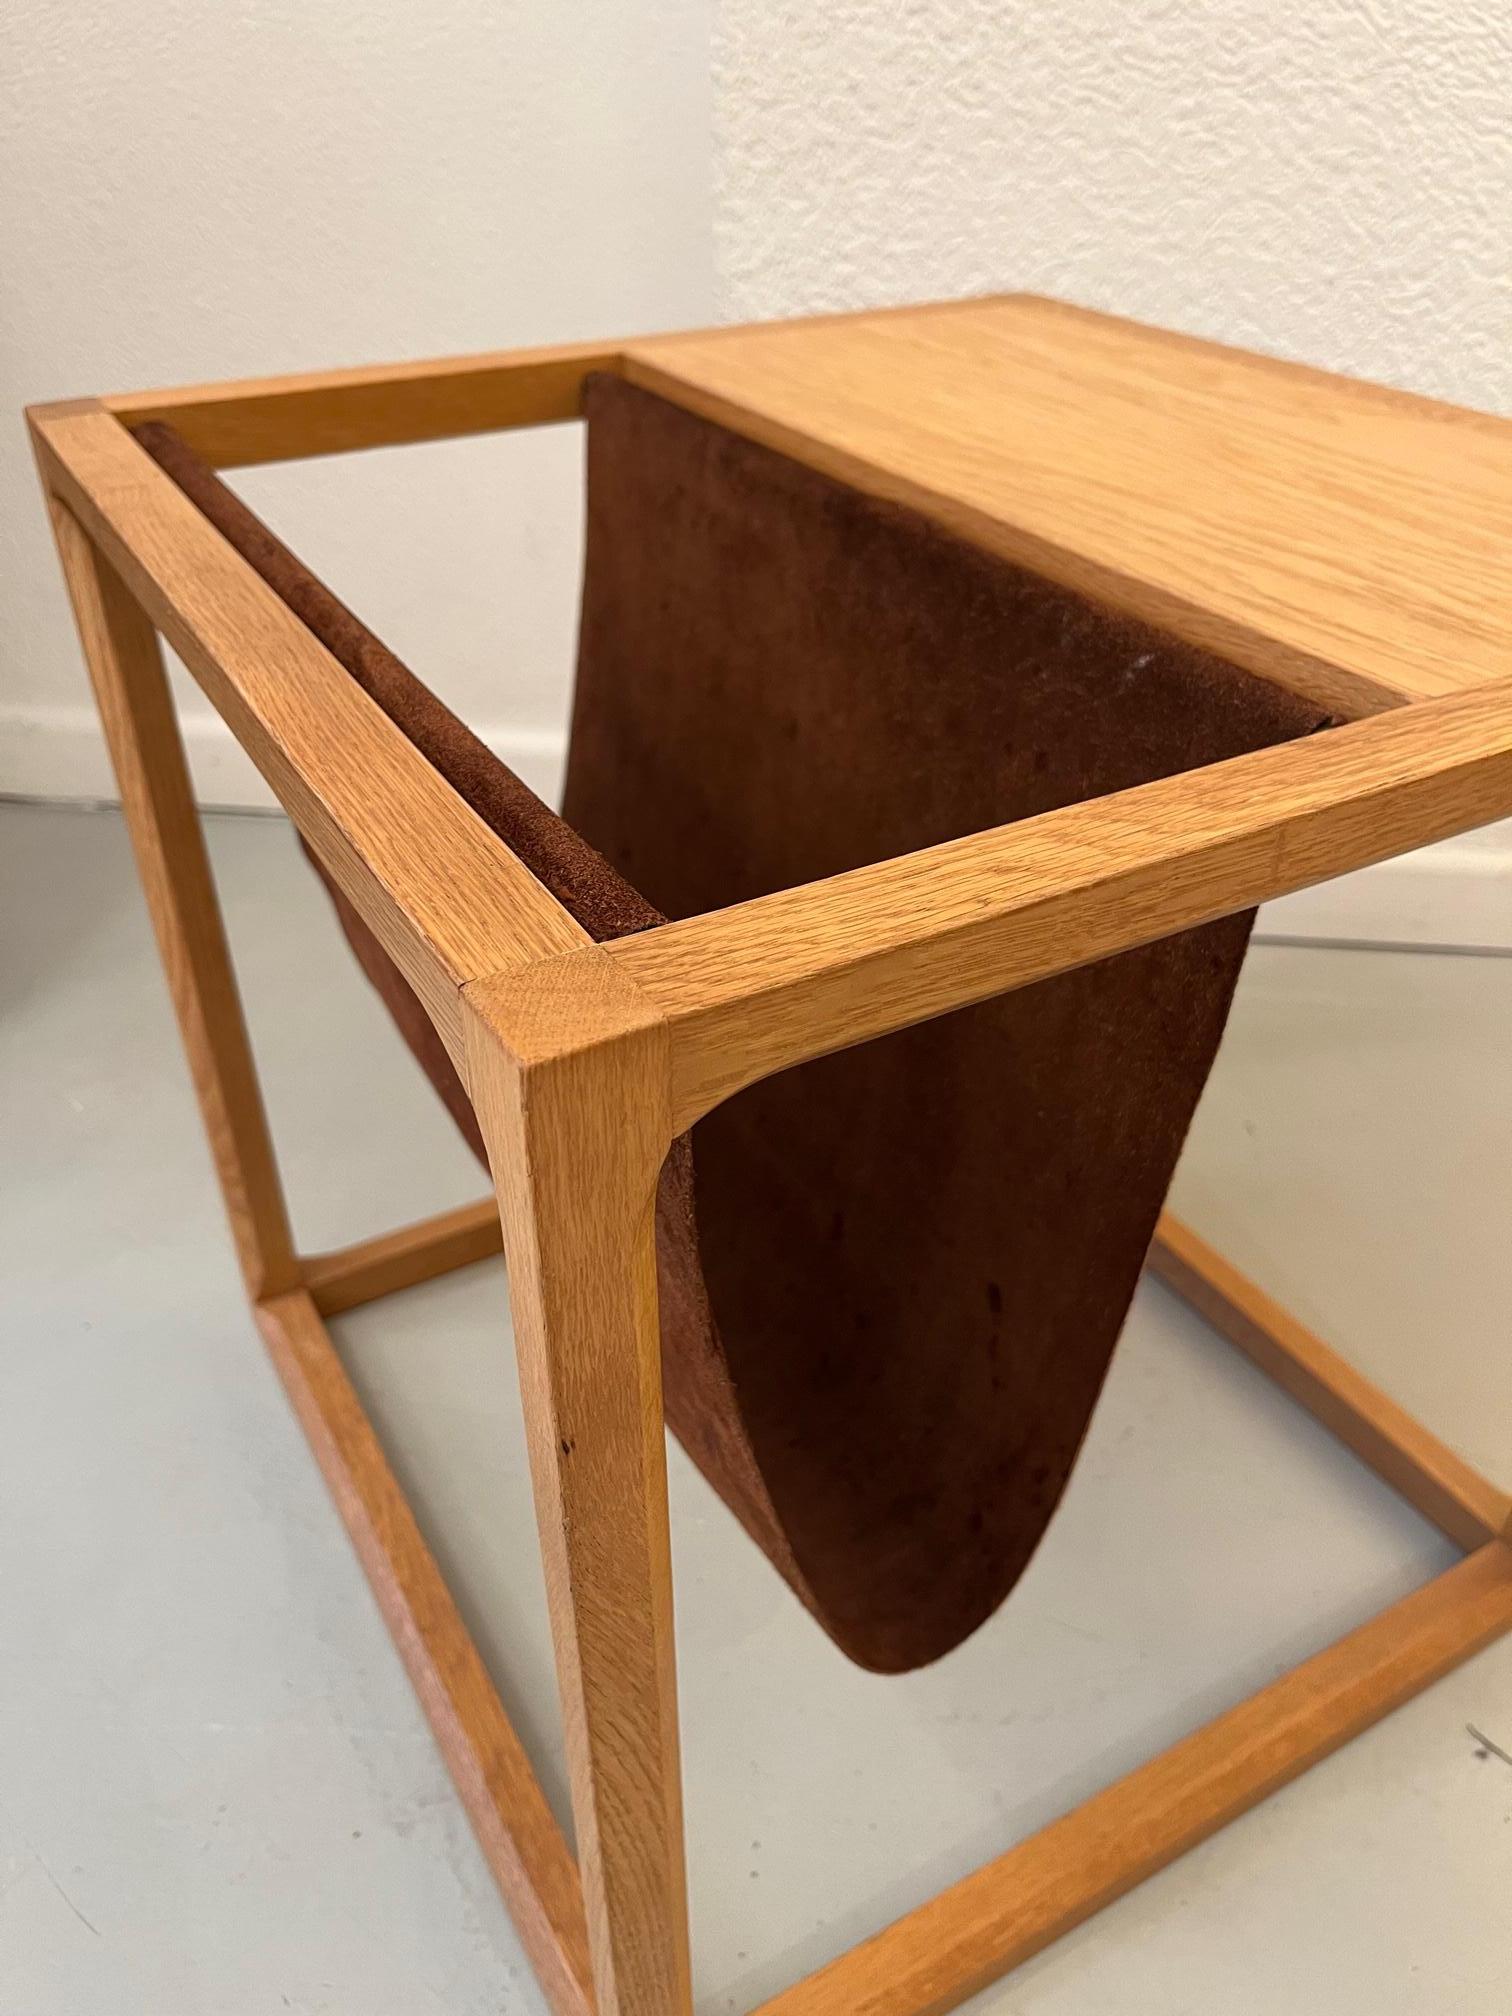 Table d'appoint / porte-revues Vintage cube en chêne et daim par Kai Kristiansen produit par Aksel Kjersgaard, Danemark ca. 1960s
Très bon état. 
L 44.5 x D 44.5 x H 44.5 cm
